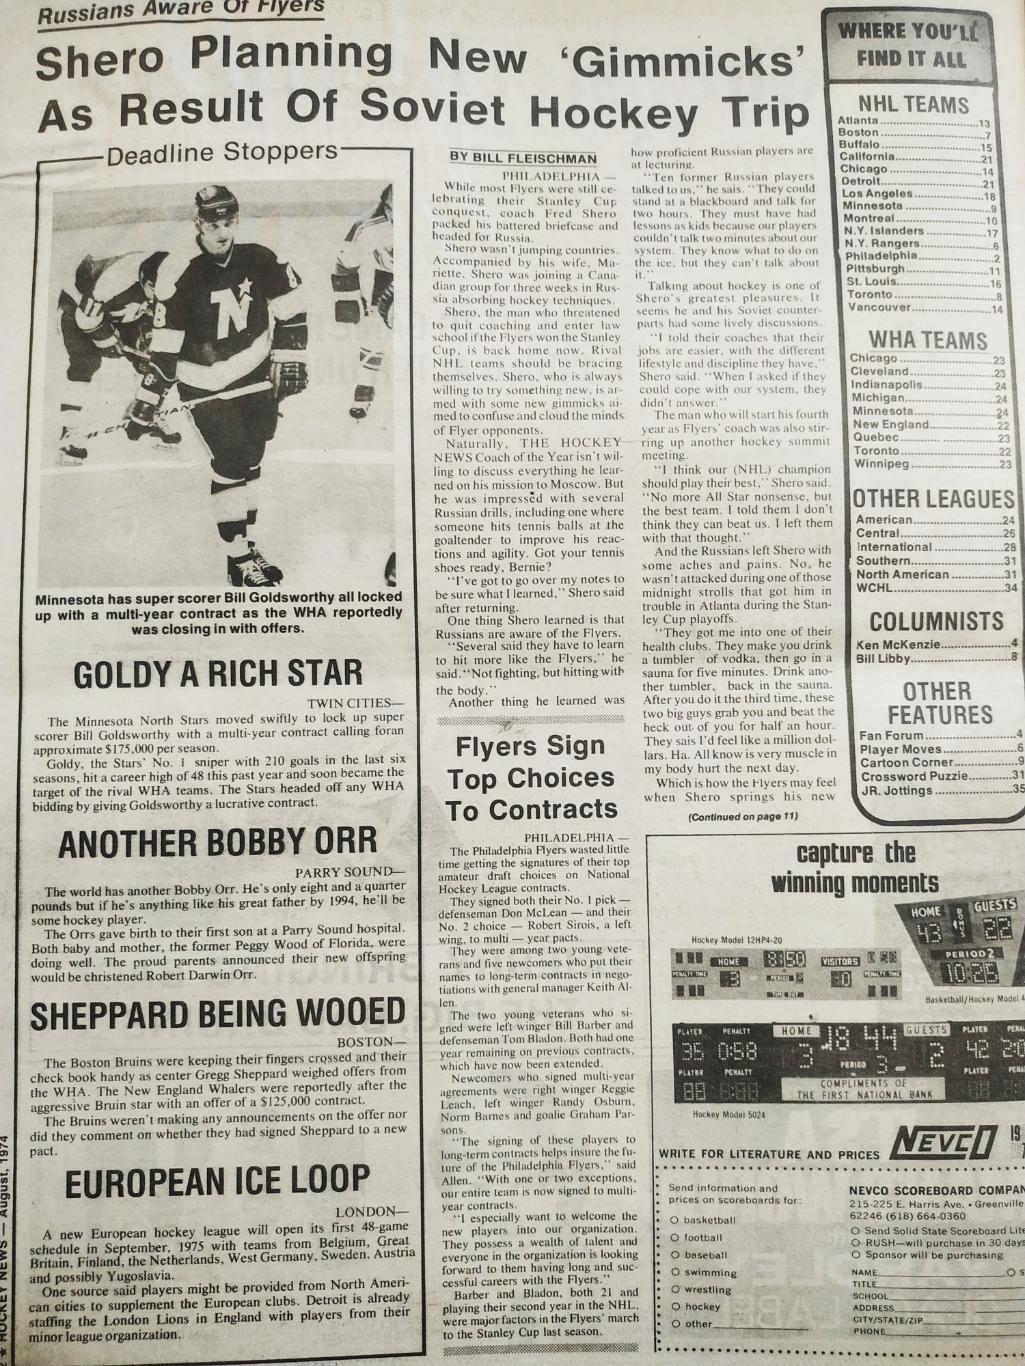 ХОККЕЙ ЖУРНАЛ ЕЖЕНЕДЕЛЬНИК НХЛ НОВОСТИ ХОККЕЯ AUGUST 1974 NHL THE HOCKEY NEWS 1